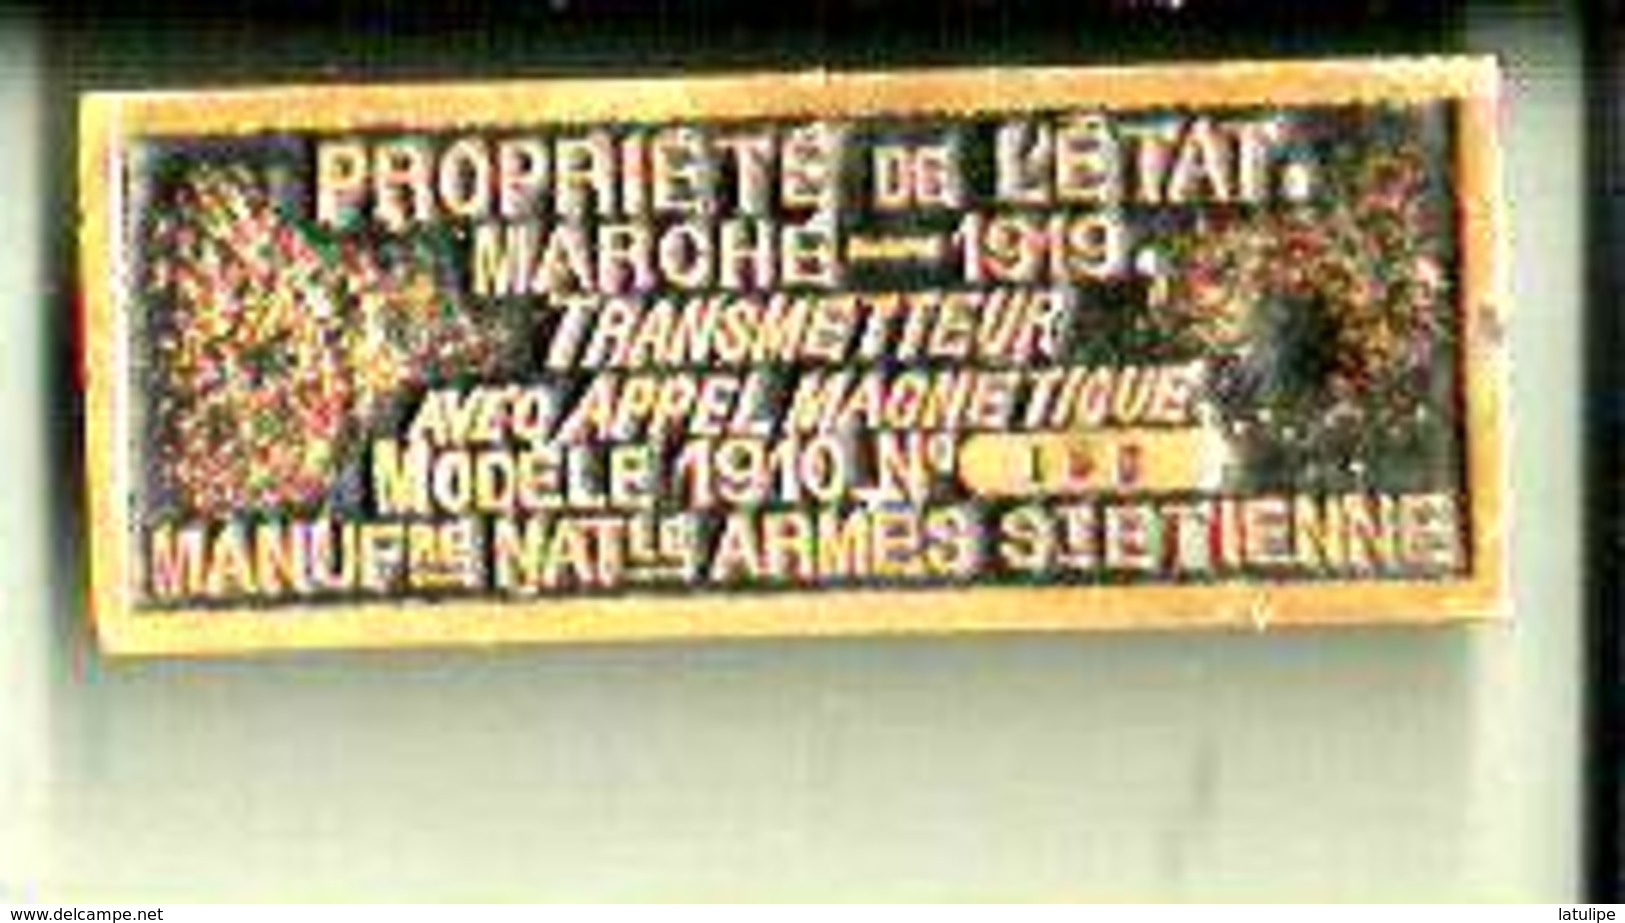 Plaque Laiton De Transmetteur Avec Appel Telephonique Modele 1910 De Manufacture Nationale Armes De St Etenne 42 - Autres Appareils